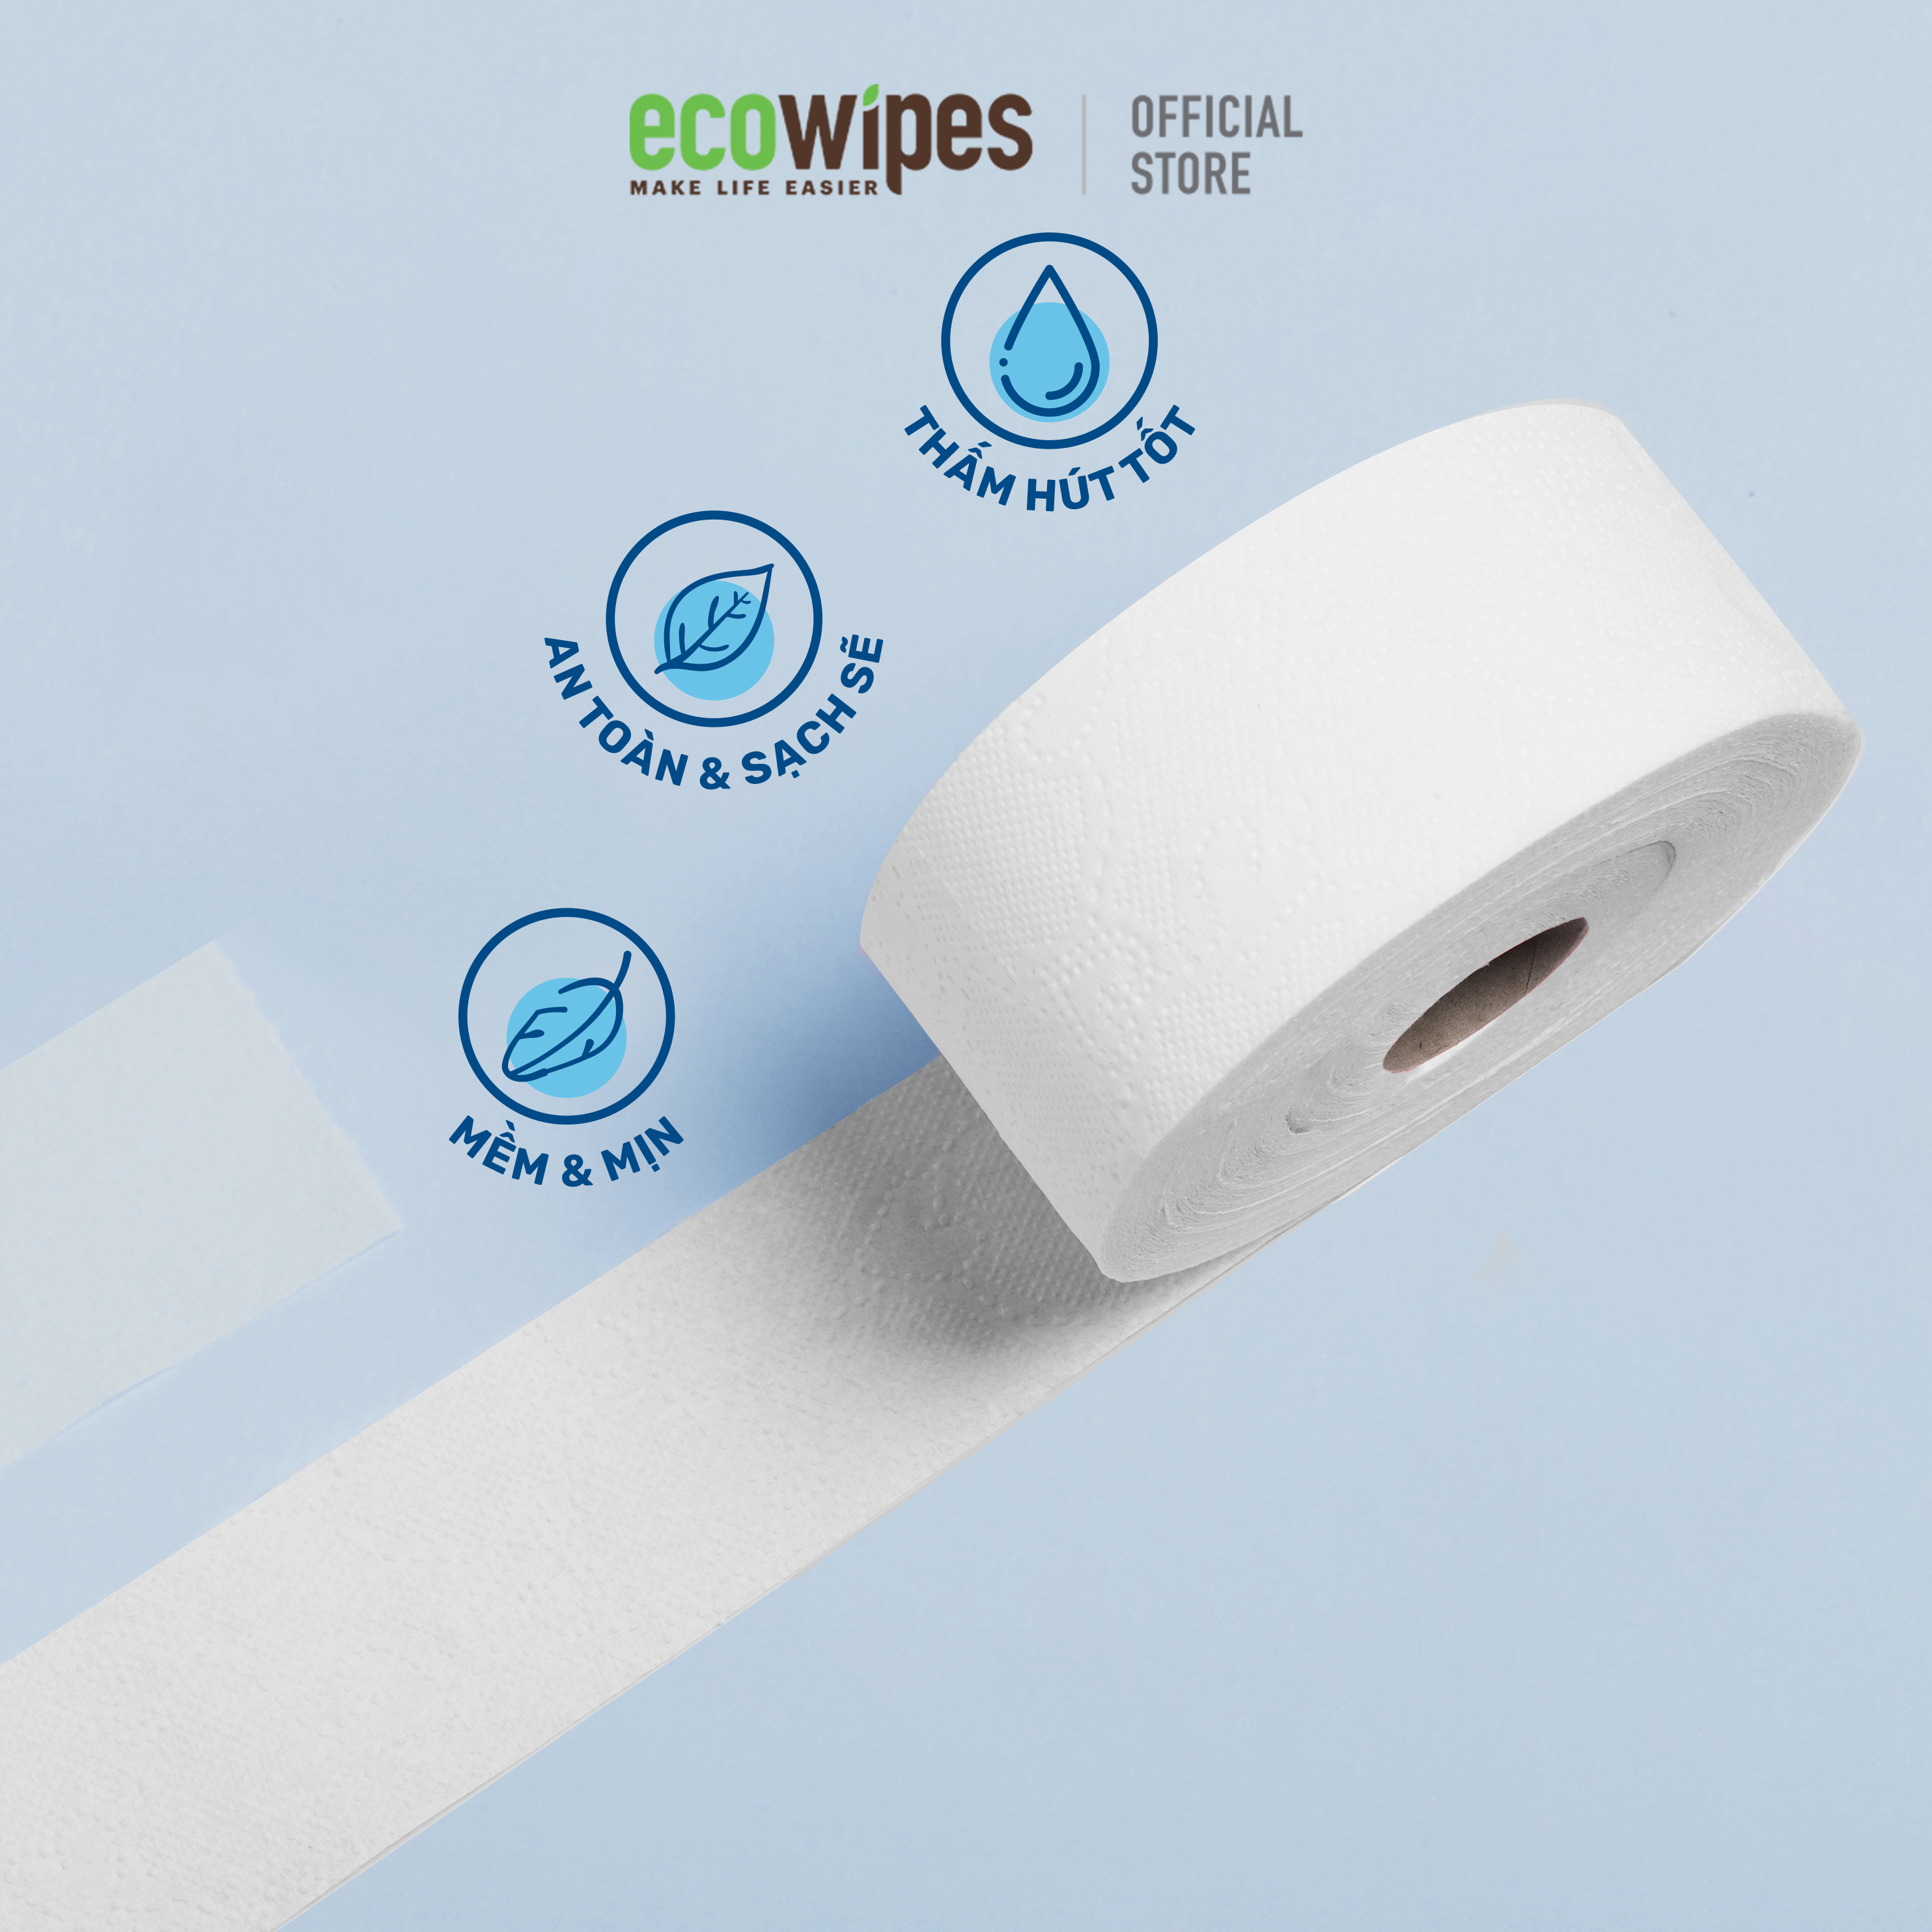 Combo 3 cuộn giấy vệ sinh giấy cuộn cao cấp Ecotissue cuộn lớn 700gr thấm hút tốt mềm mịn an toàn sạch sẽ